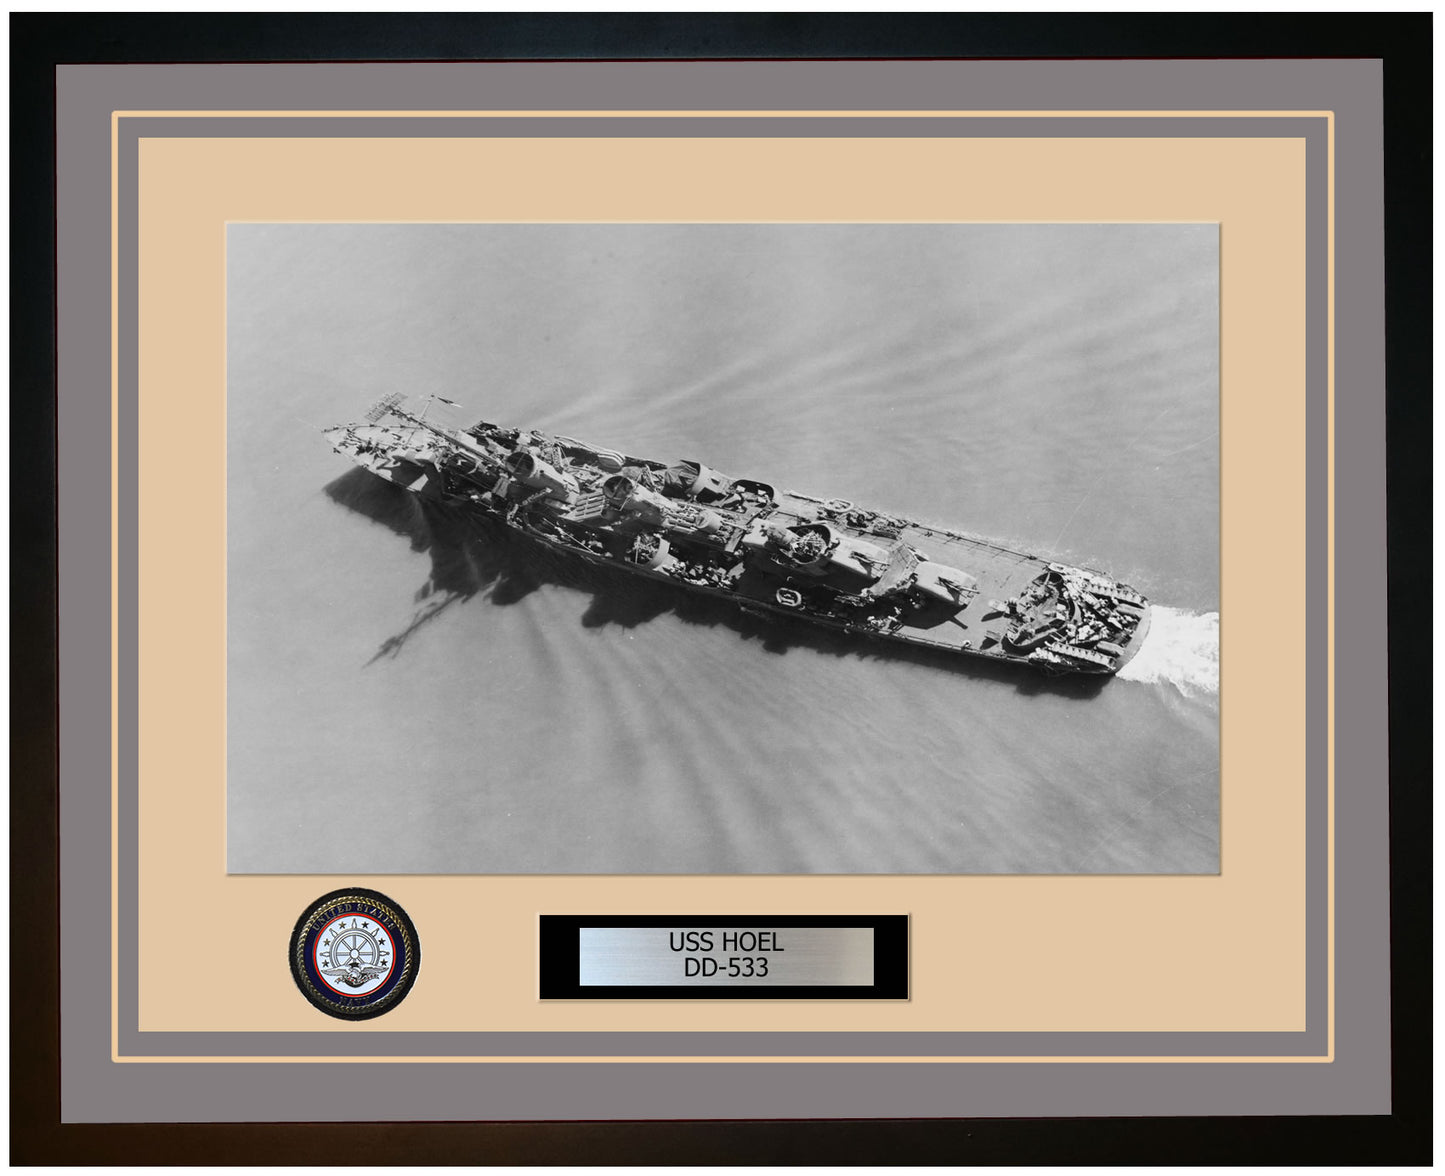 USS HOEL DD-533 Framed Navy Ship Photo Grey